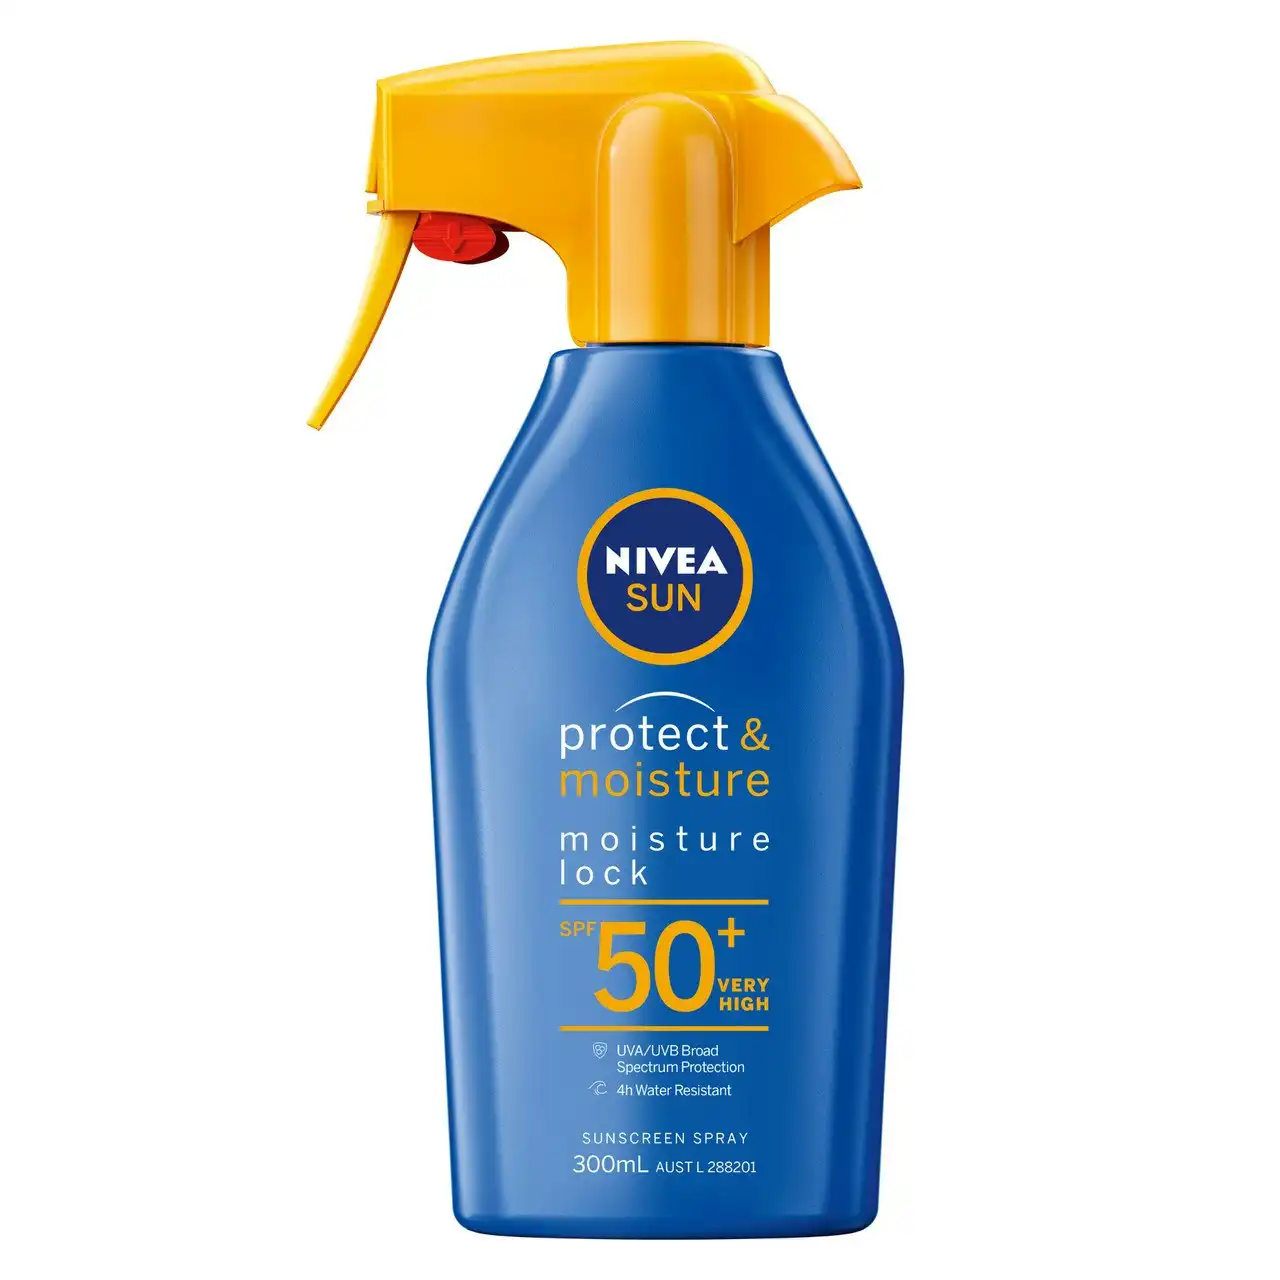 Nivea Protect & Moisture Moisture Lock SPF50+ Sunscreen Spray